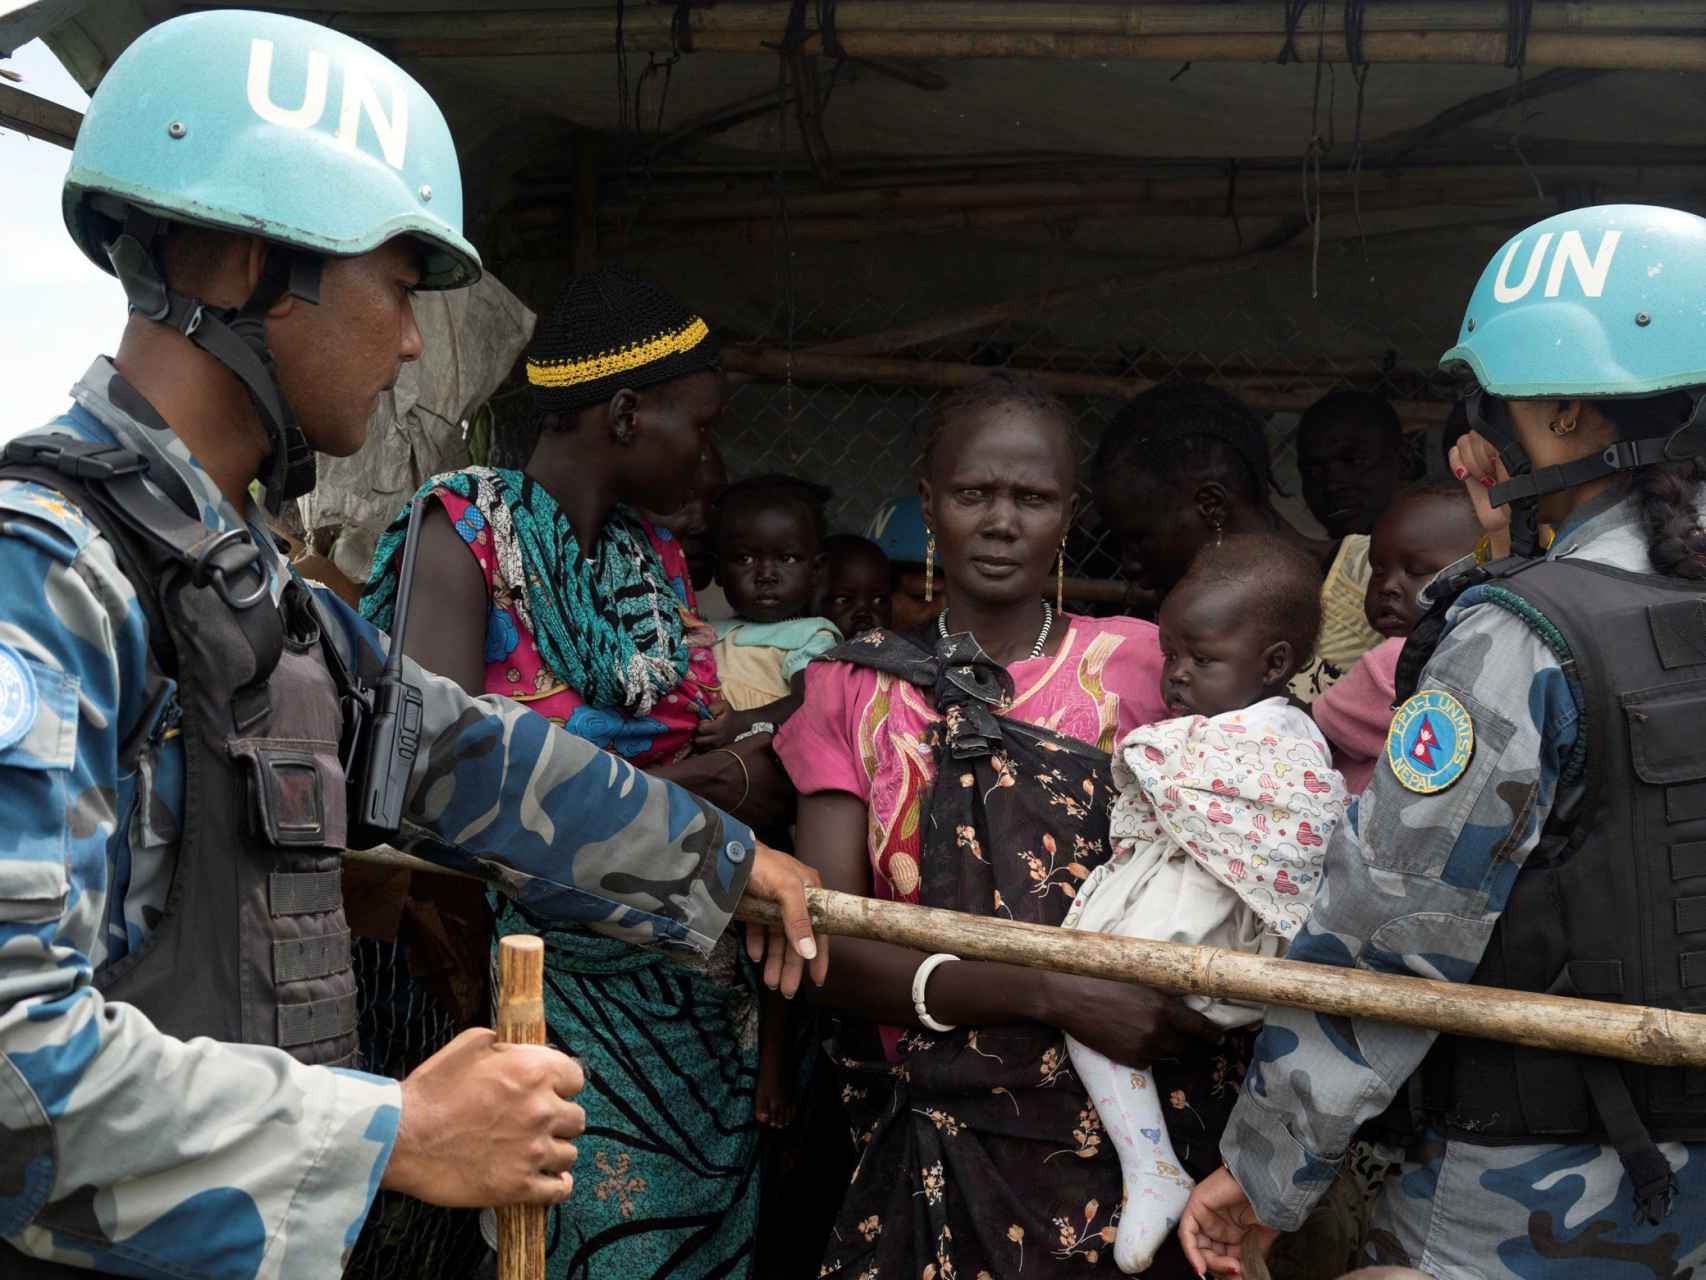 La ONU tiene miles de efectivos en Sudán del Sur.